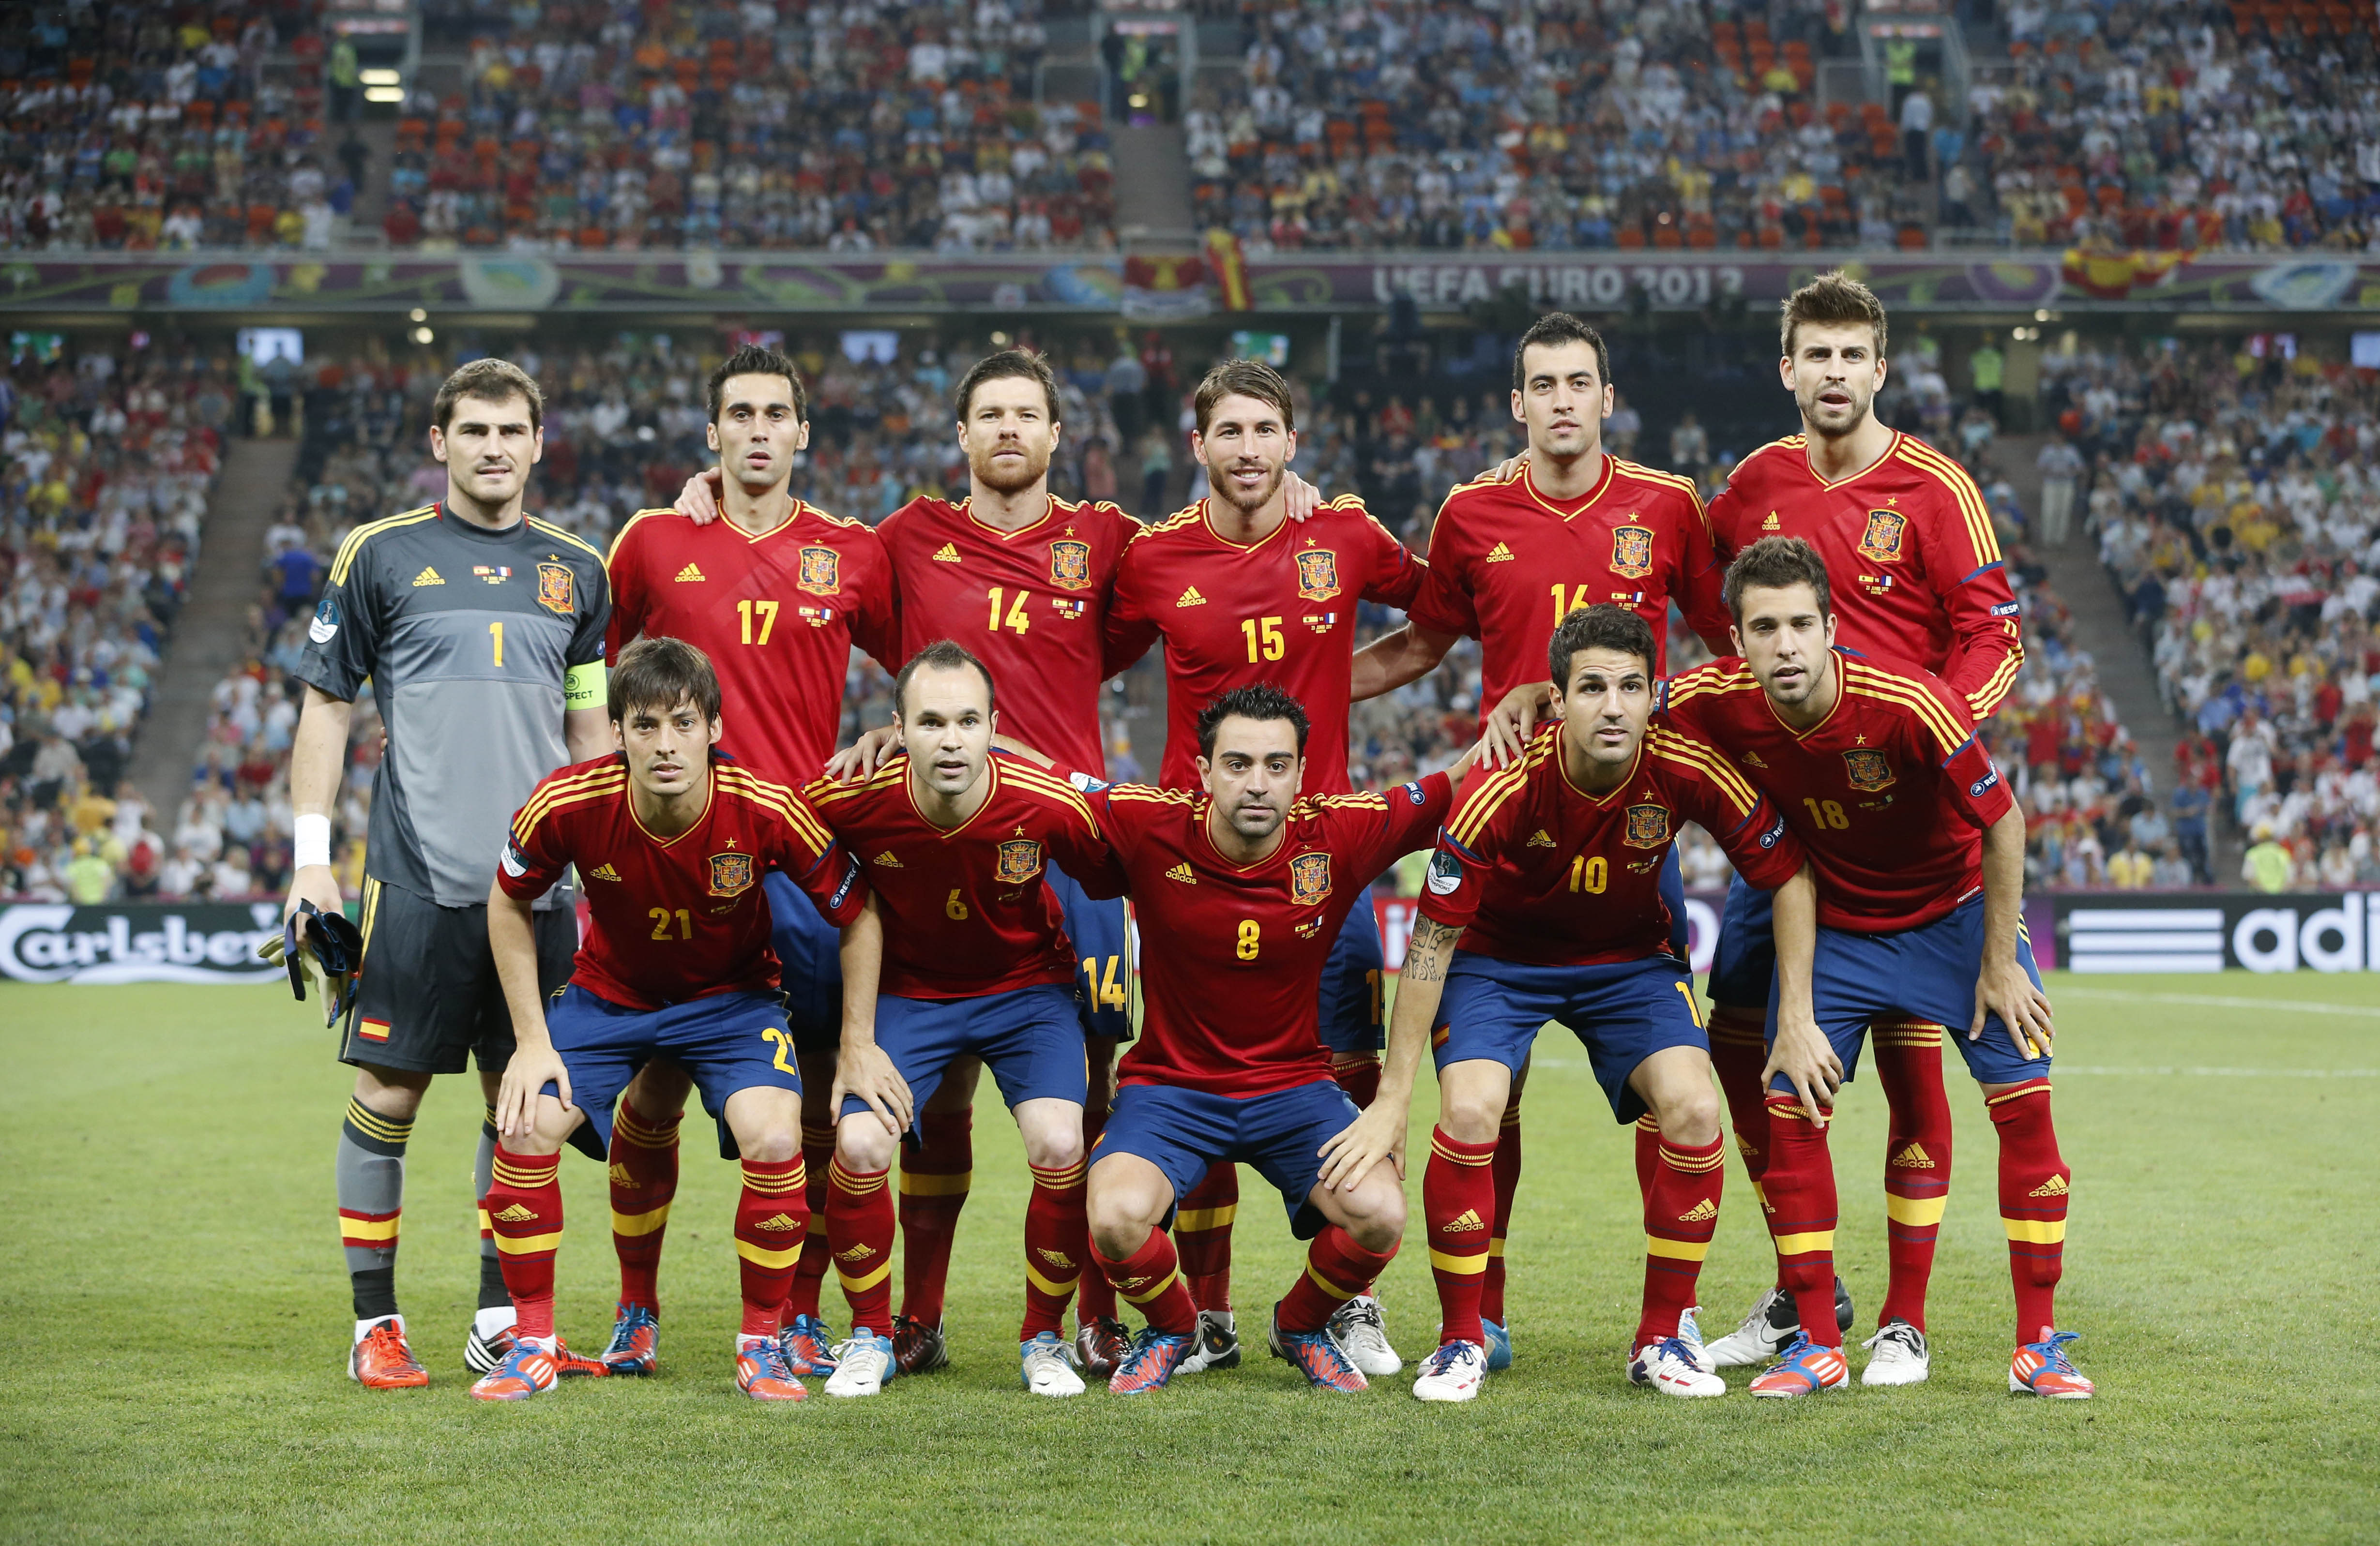 Det spanska laget har kritiserats för att spela tråkigt- Sundgren menar att folk är "avundsjuka".